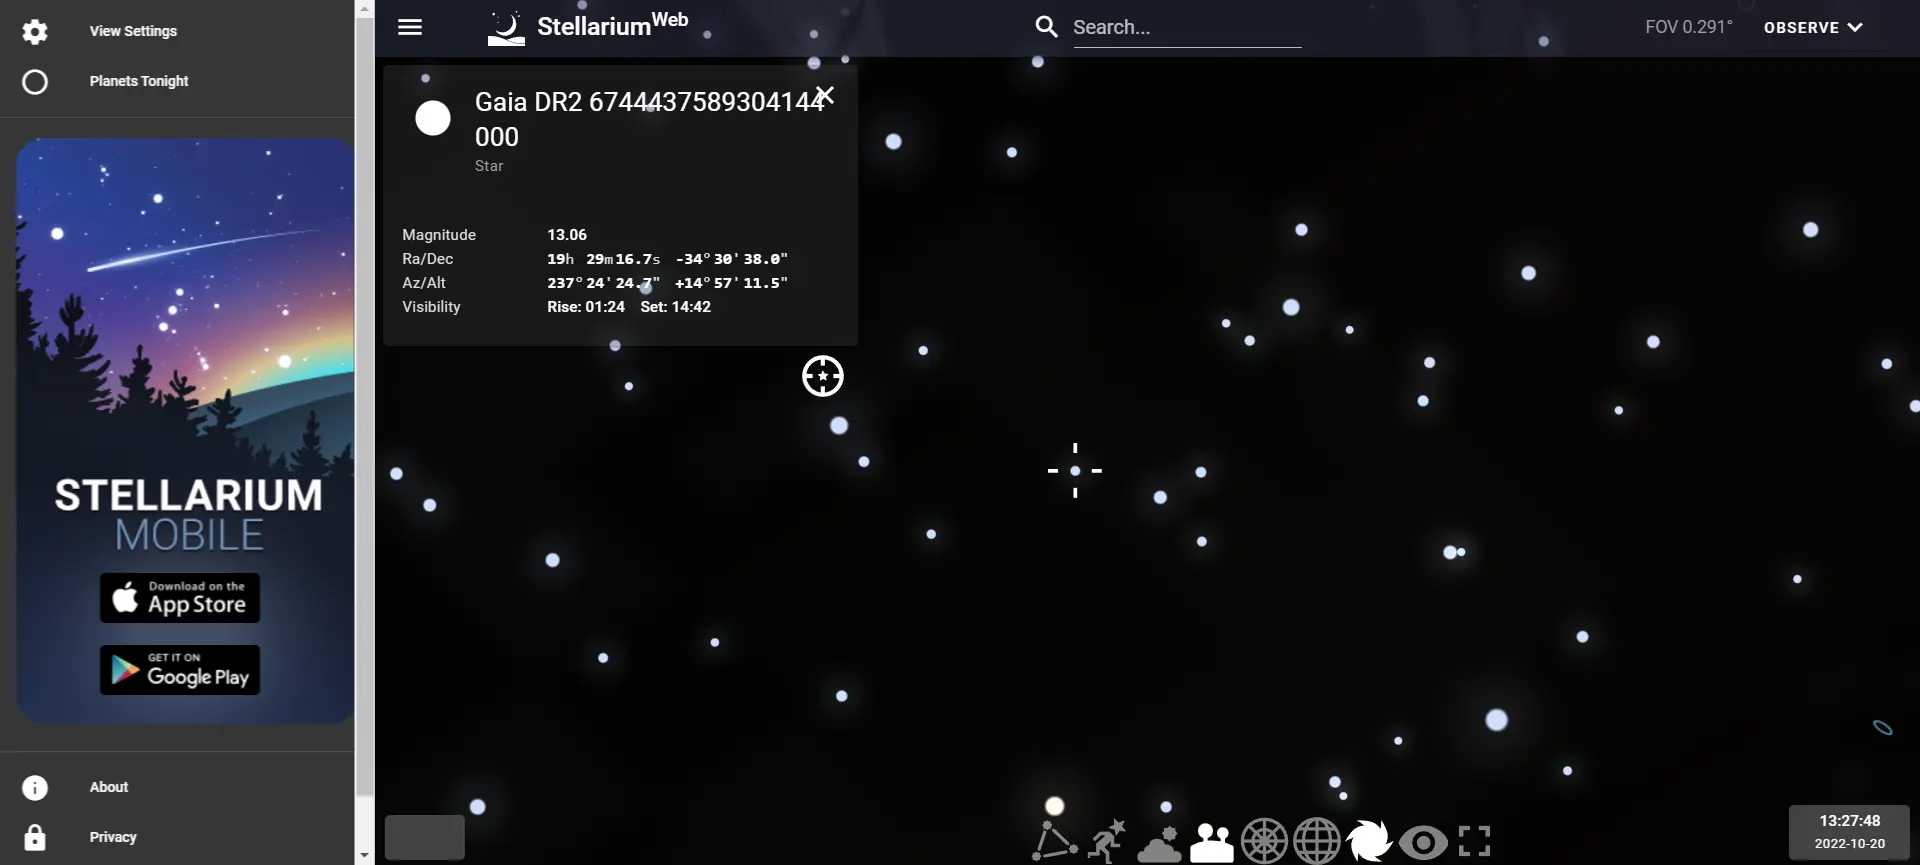 planetarium online - Description in the Stellarium catalog